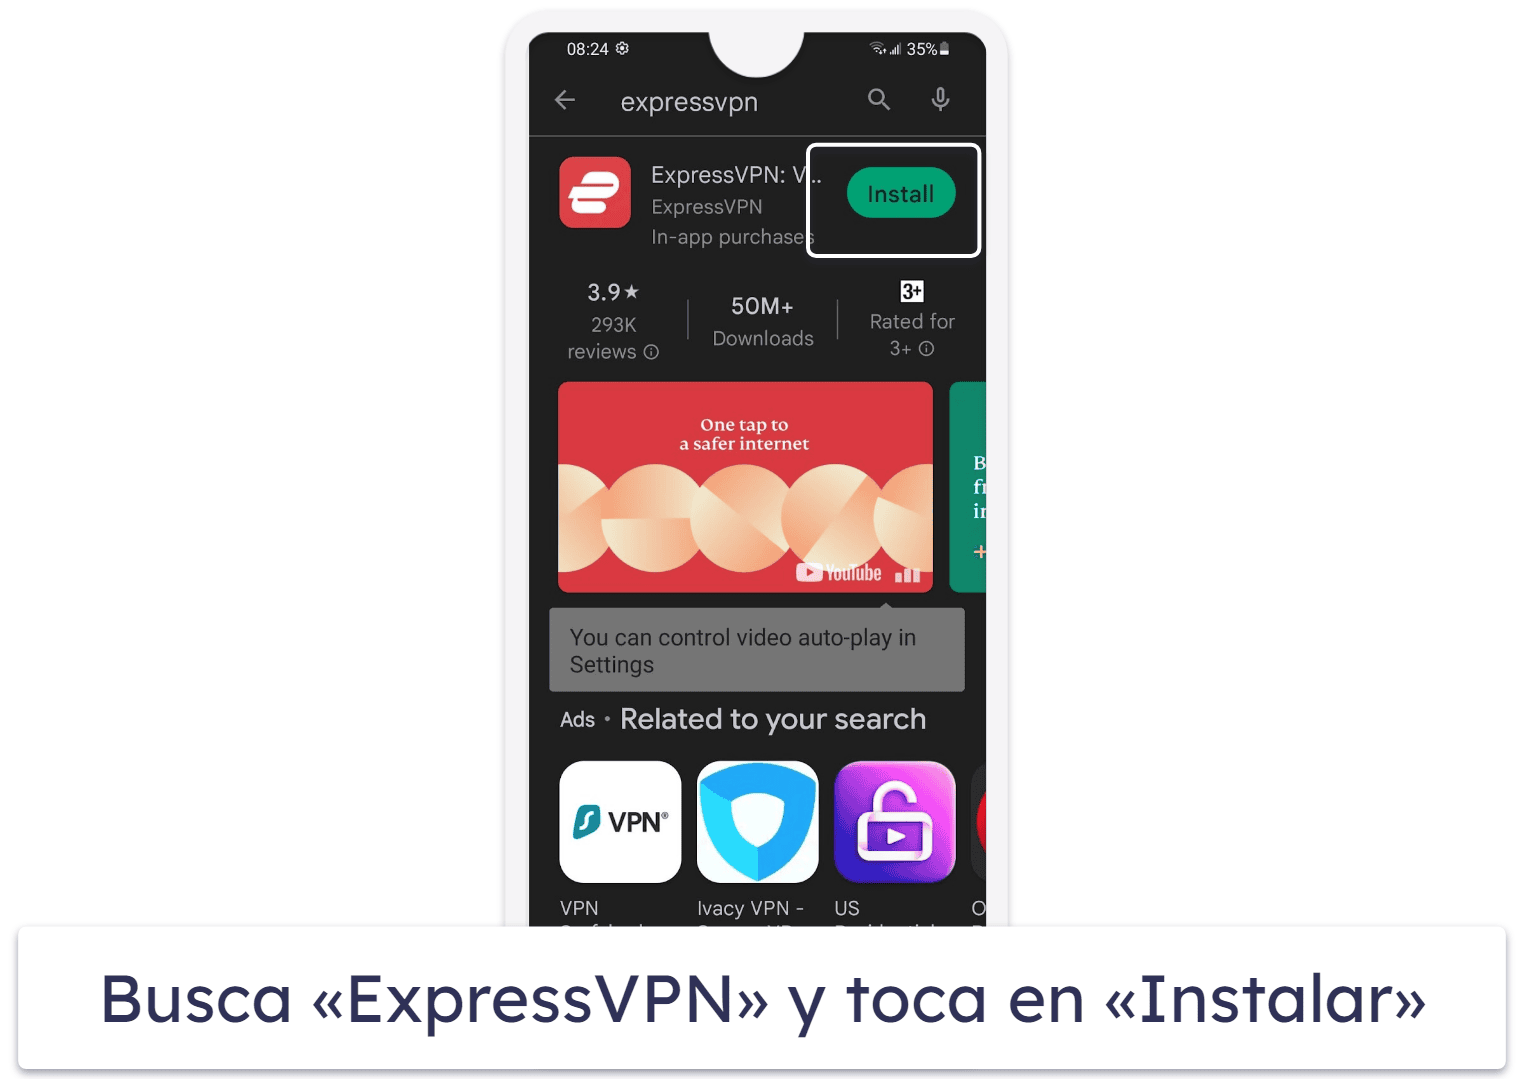 Cómo conseguir la prueba gratis de 7 días de ExpressVPN (solo para dispositivos móviles)